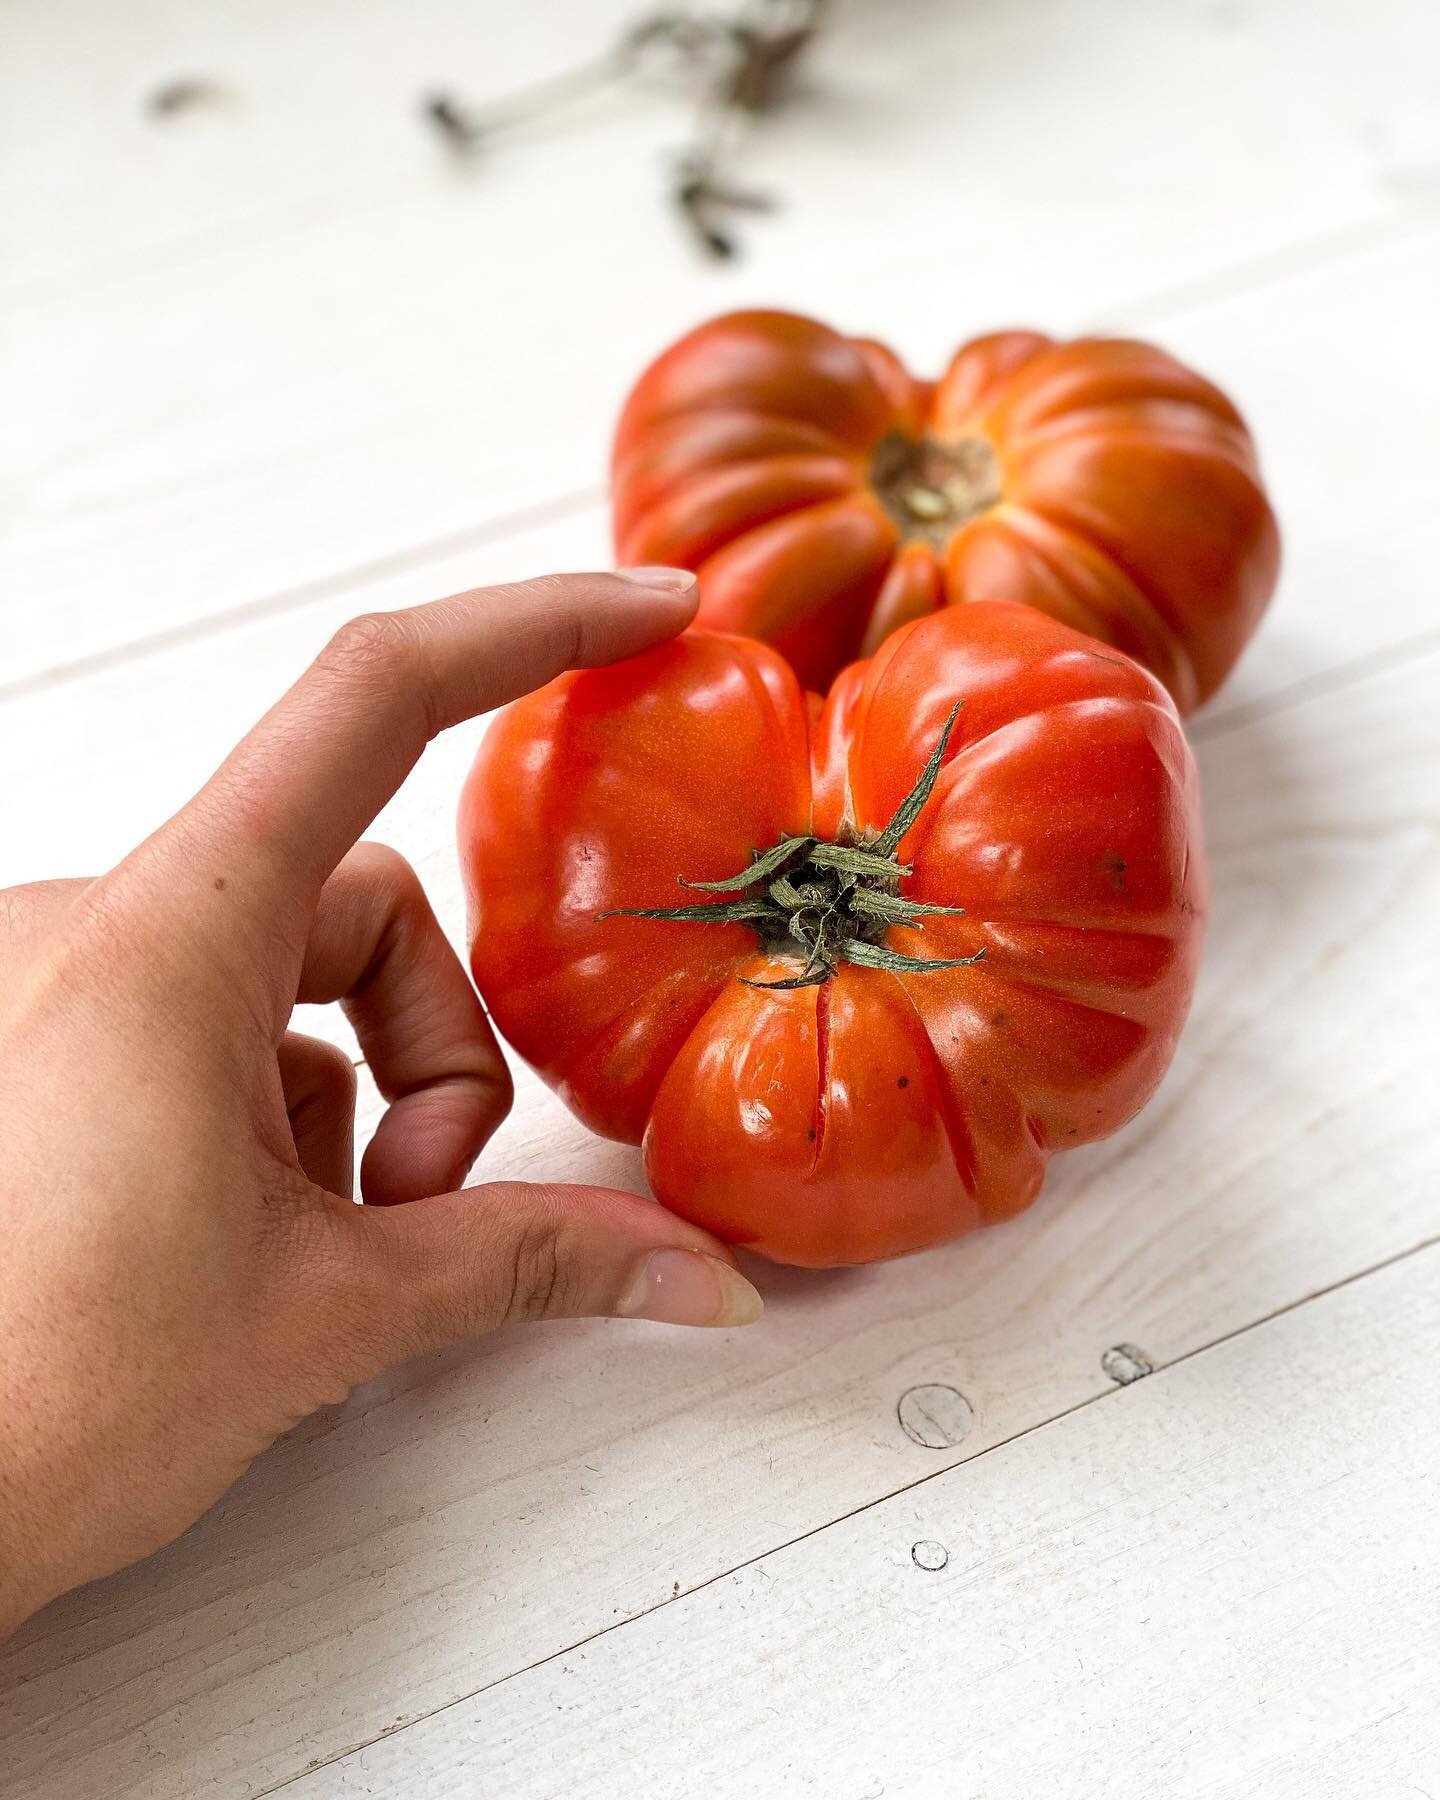 I LOVE YOU FROM MY HEAD TOMATOES! &hearts;️⠀
⠀
Hoe lief zijn deze hartvormige coeur de boeufkes?!⠀
⠀
Tomaten zijn geweldig, koud of warm te eten!⠀
Warm en in wat olie of boter klaargemaakt is wel een dubbele winst⠀
🍅Eerst en vooral &lsquo;YUM&rsquo;